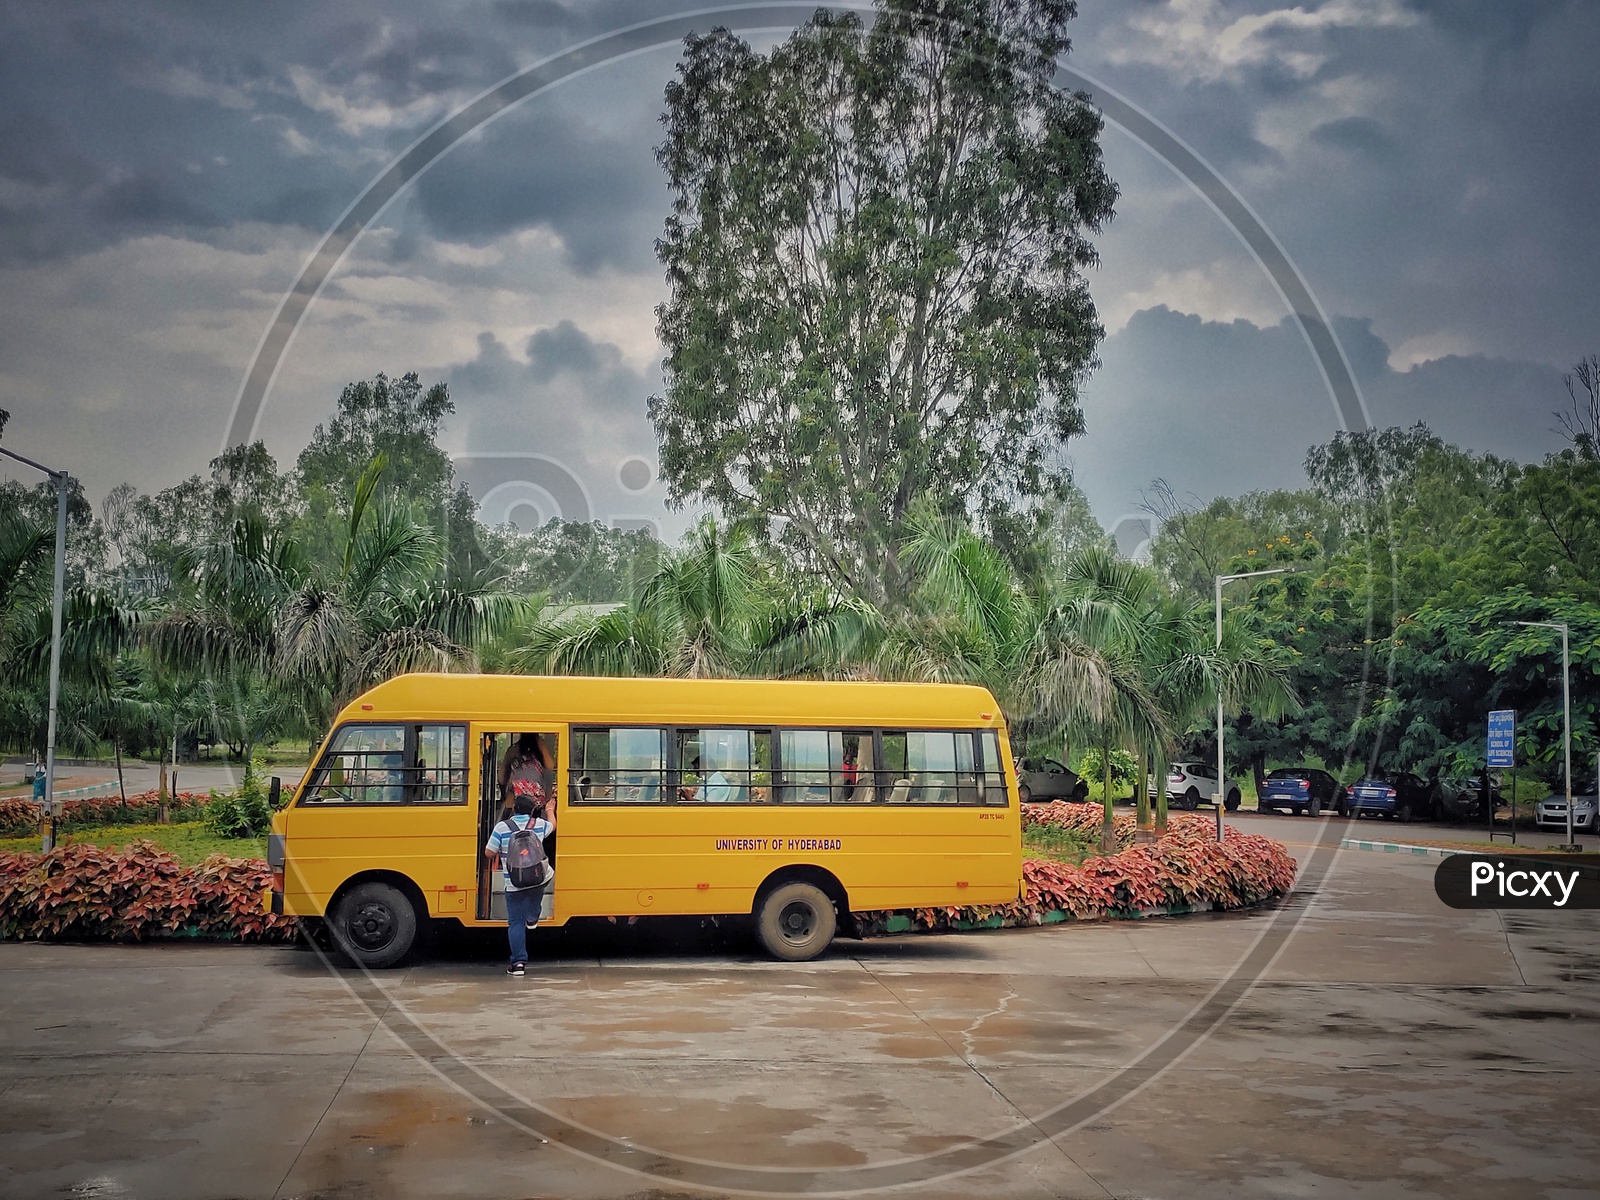 University of hyderabad campus bus